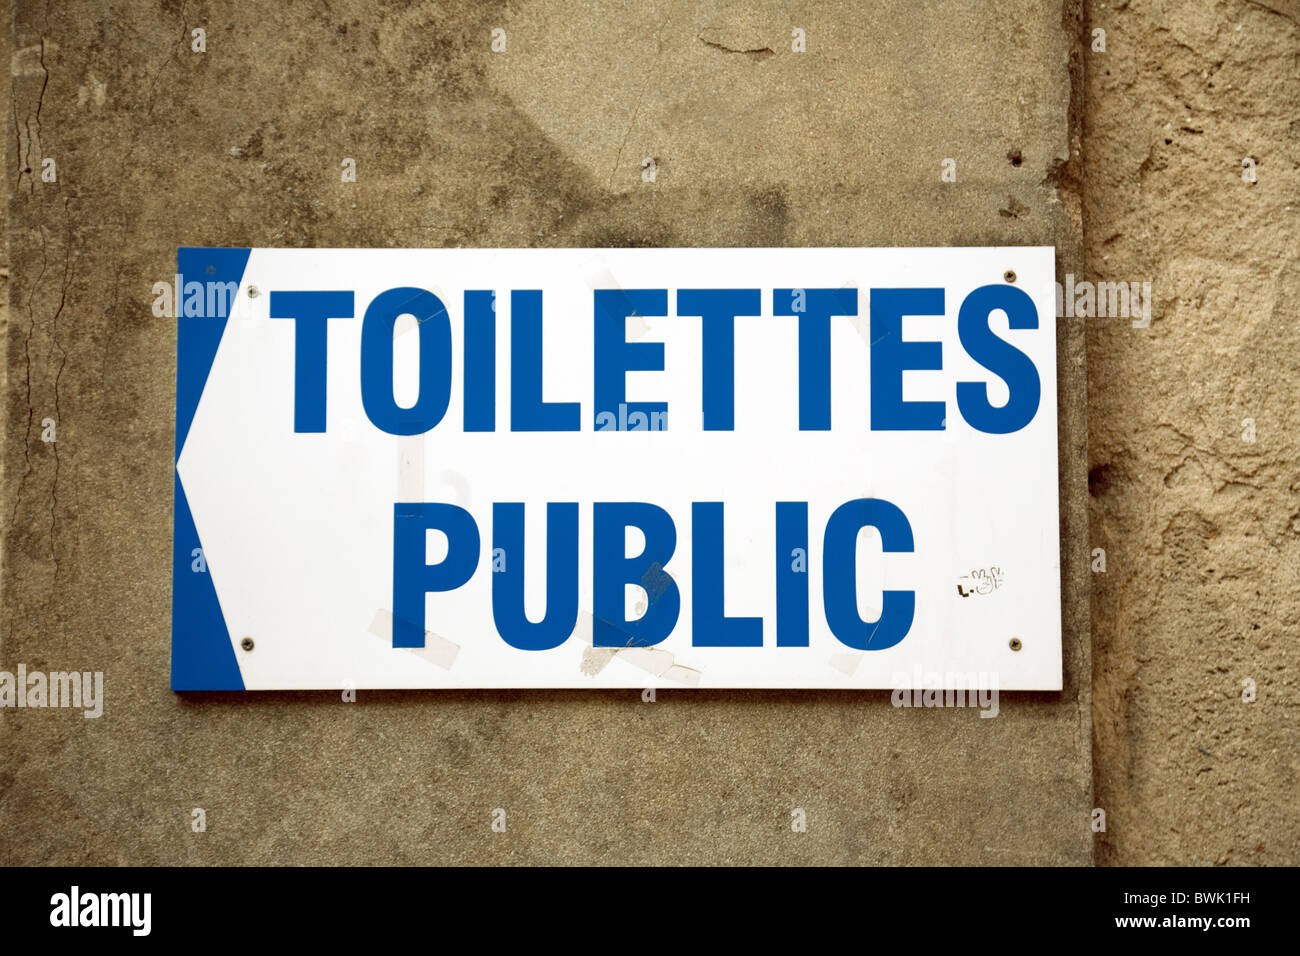 Public toilet sign, Meaux, Ile de France France Stock Photo